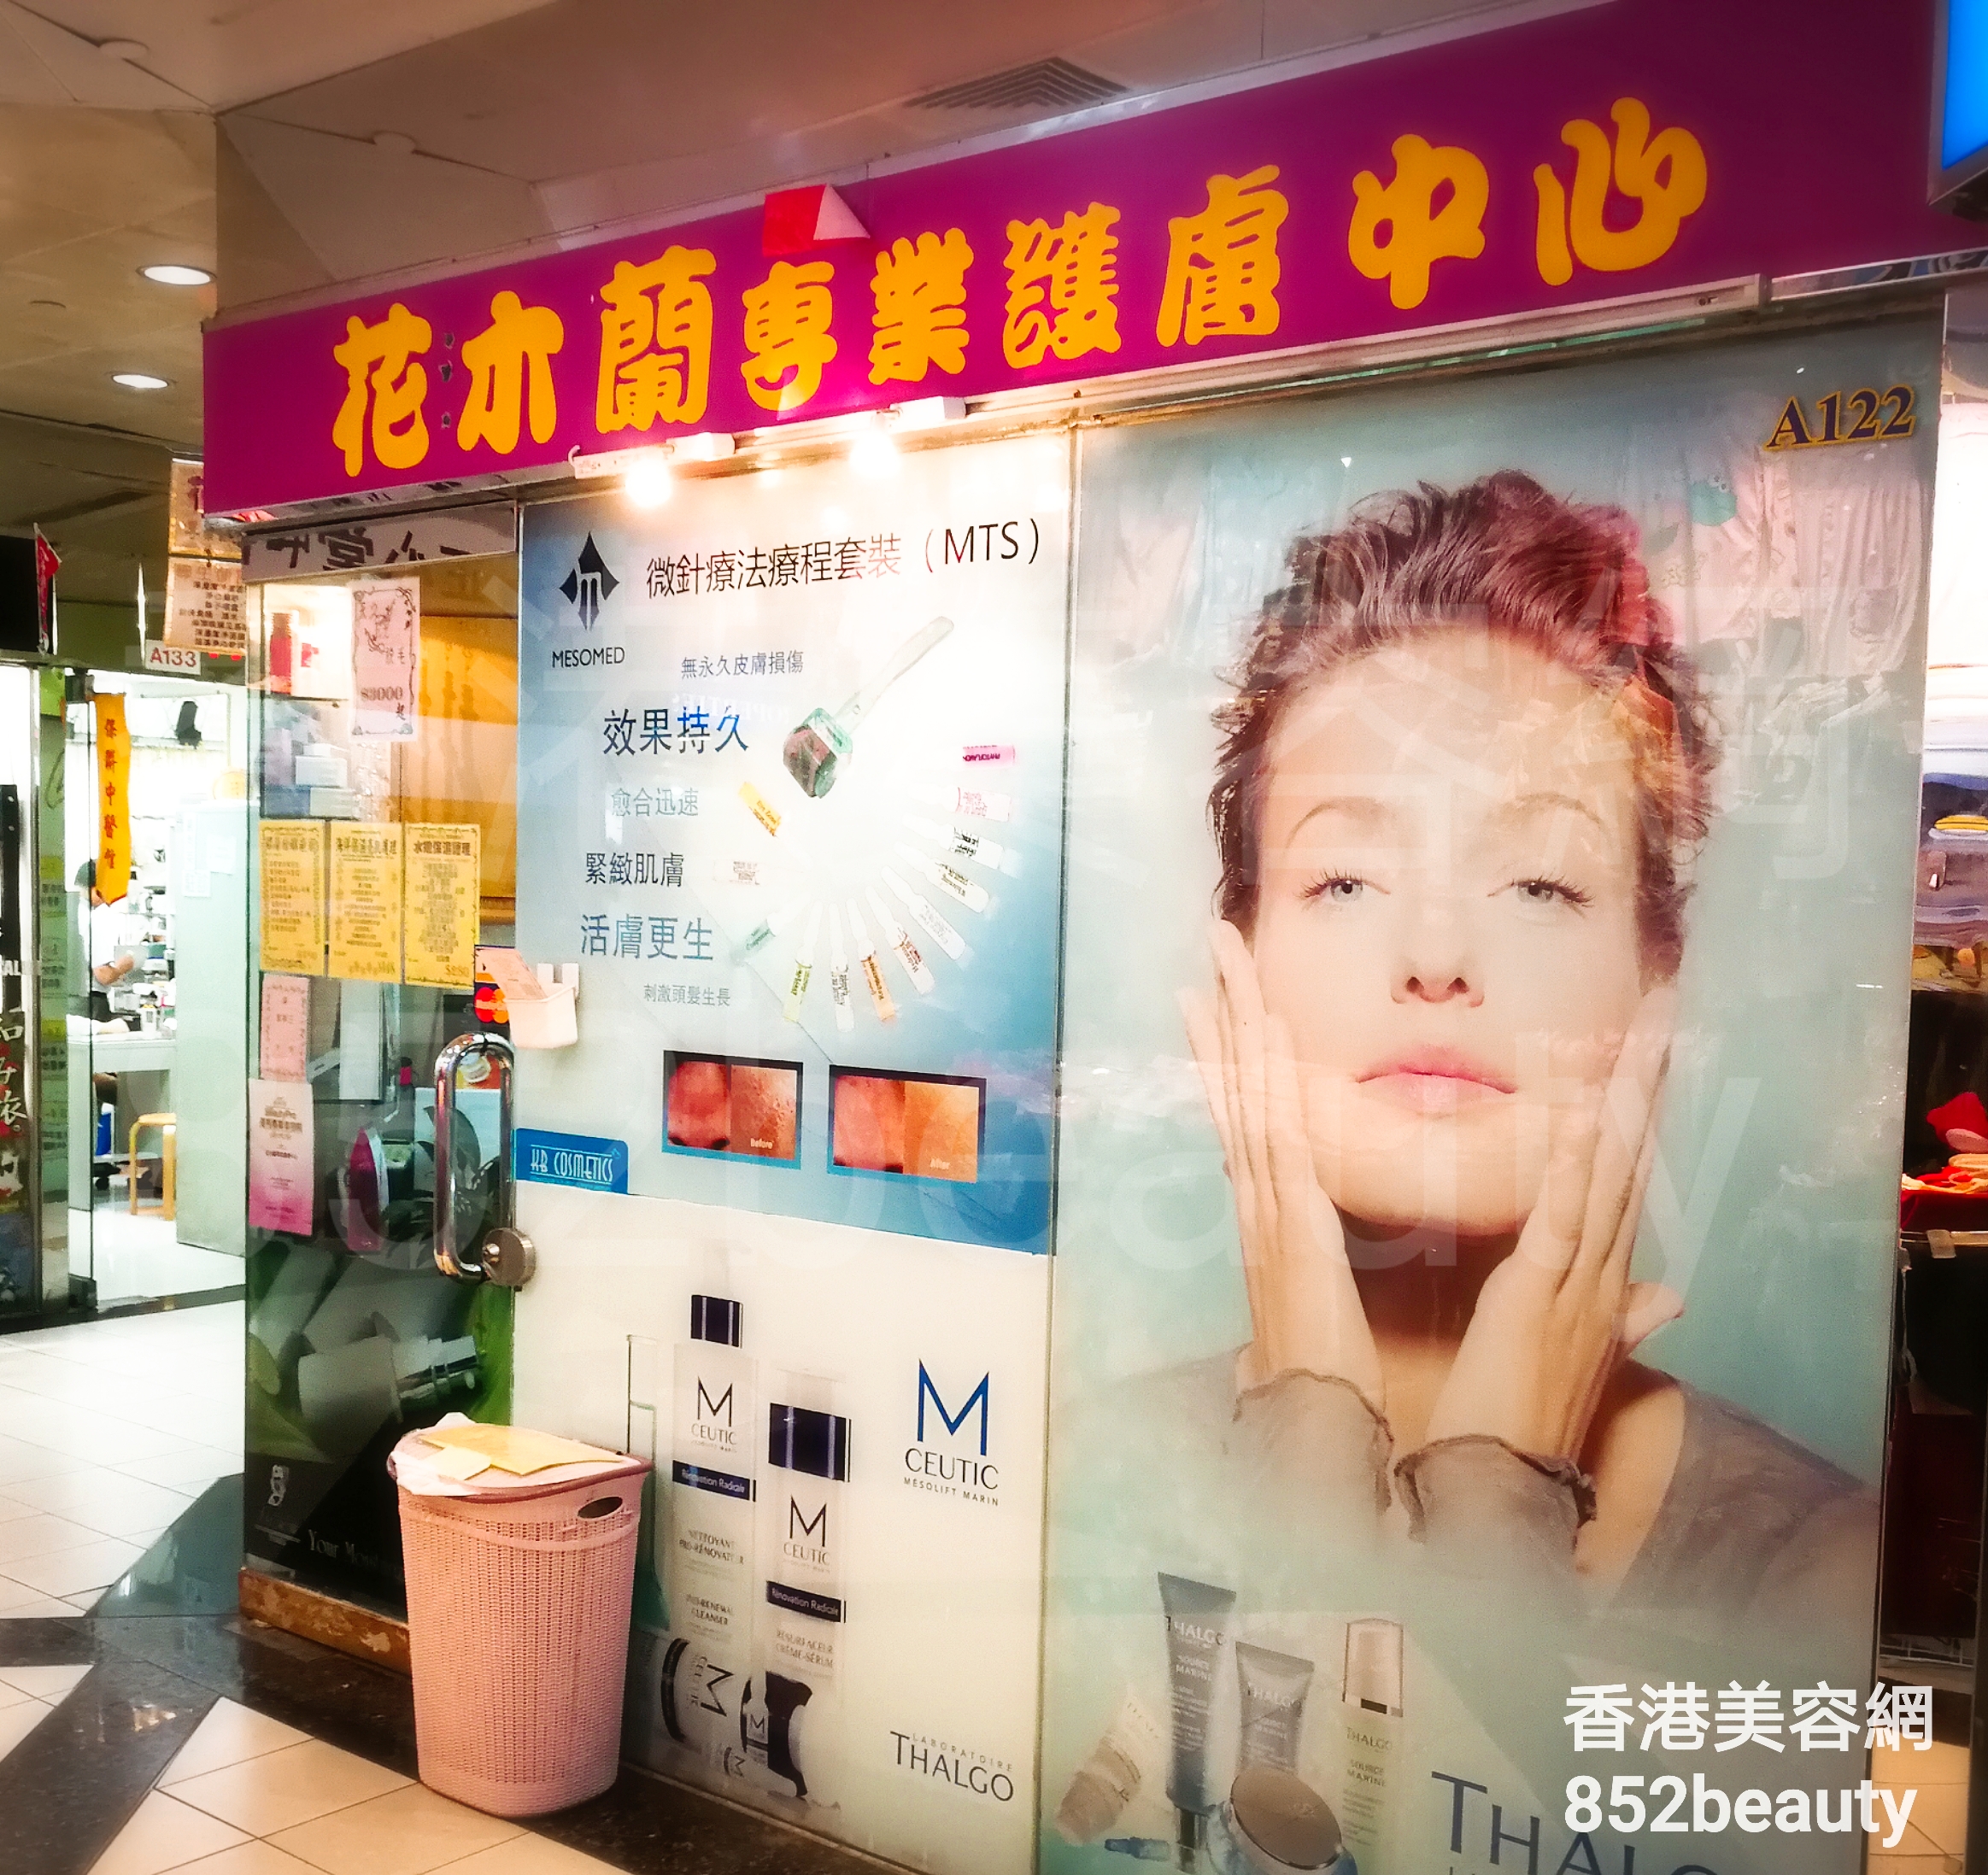 醫學美容: 花木蘭 專業護膚中心